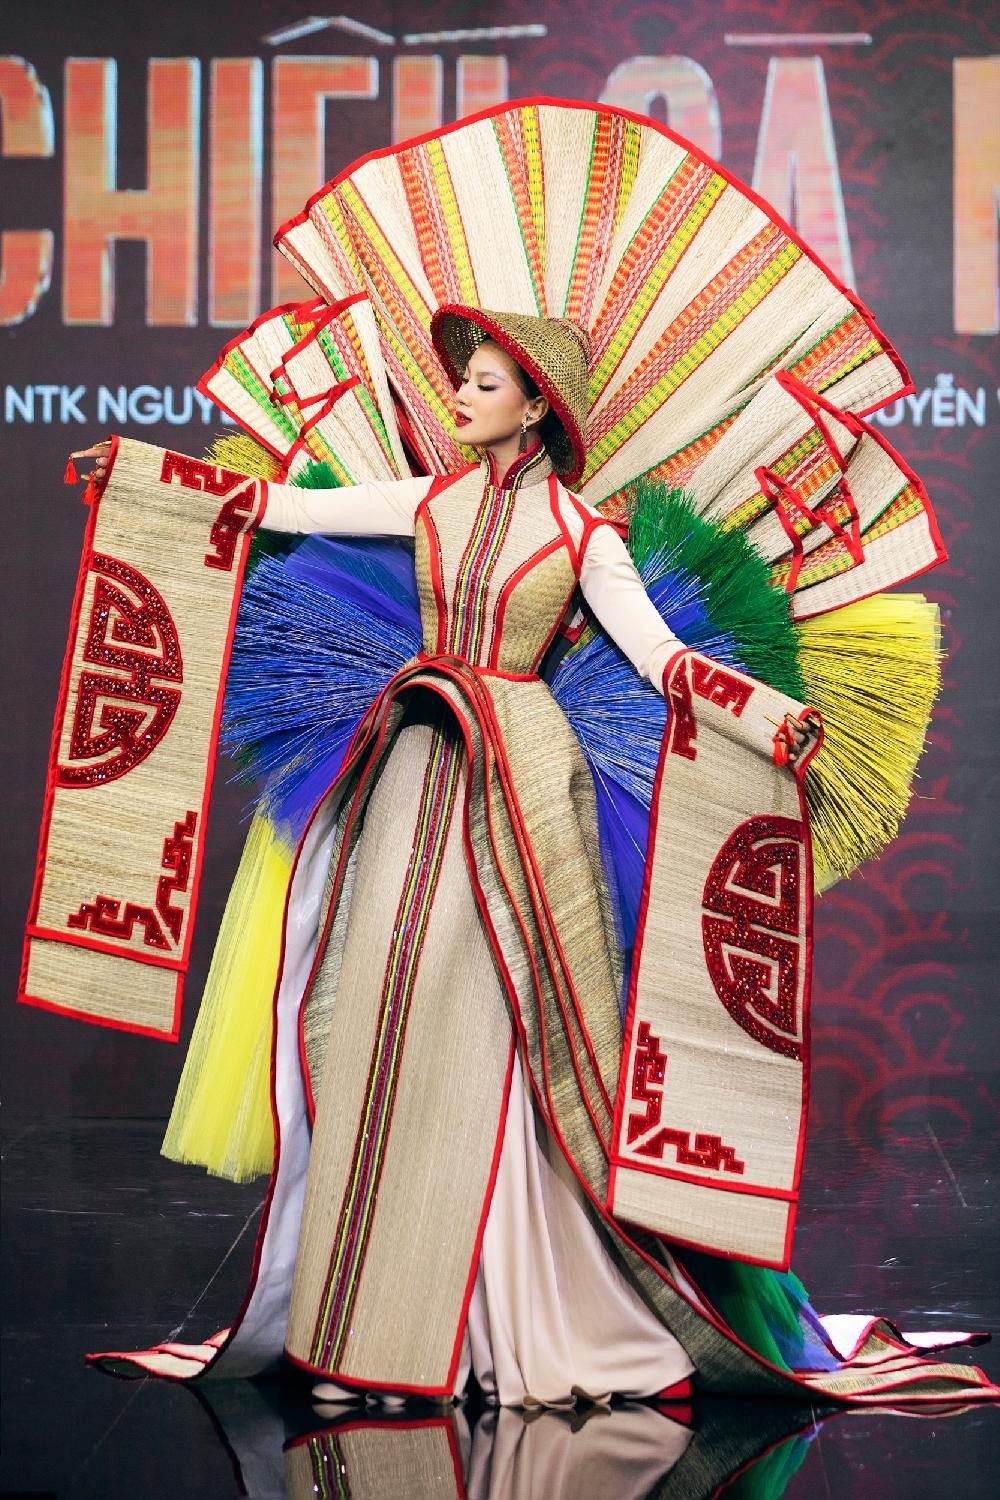 Thiết kế nào được chọn làm Trang phục Dân tộc cho tân Hoa hậu Hoàn vũ Việt Nam? ảnh 5